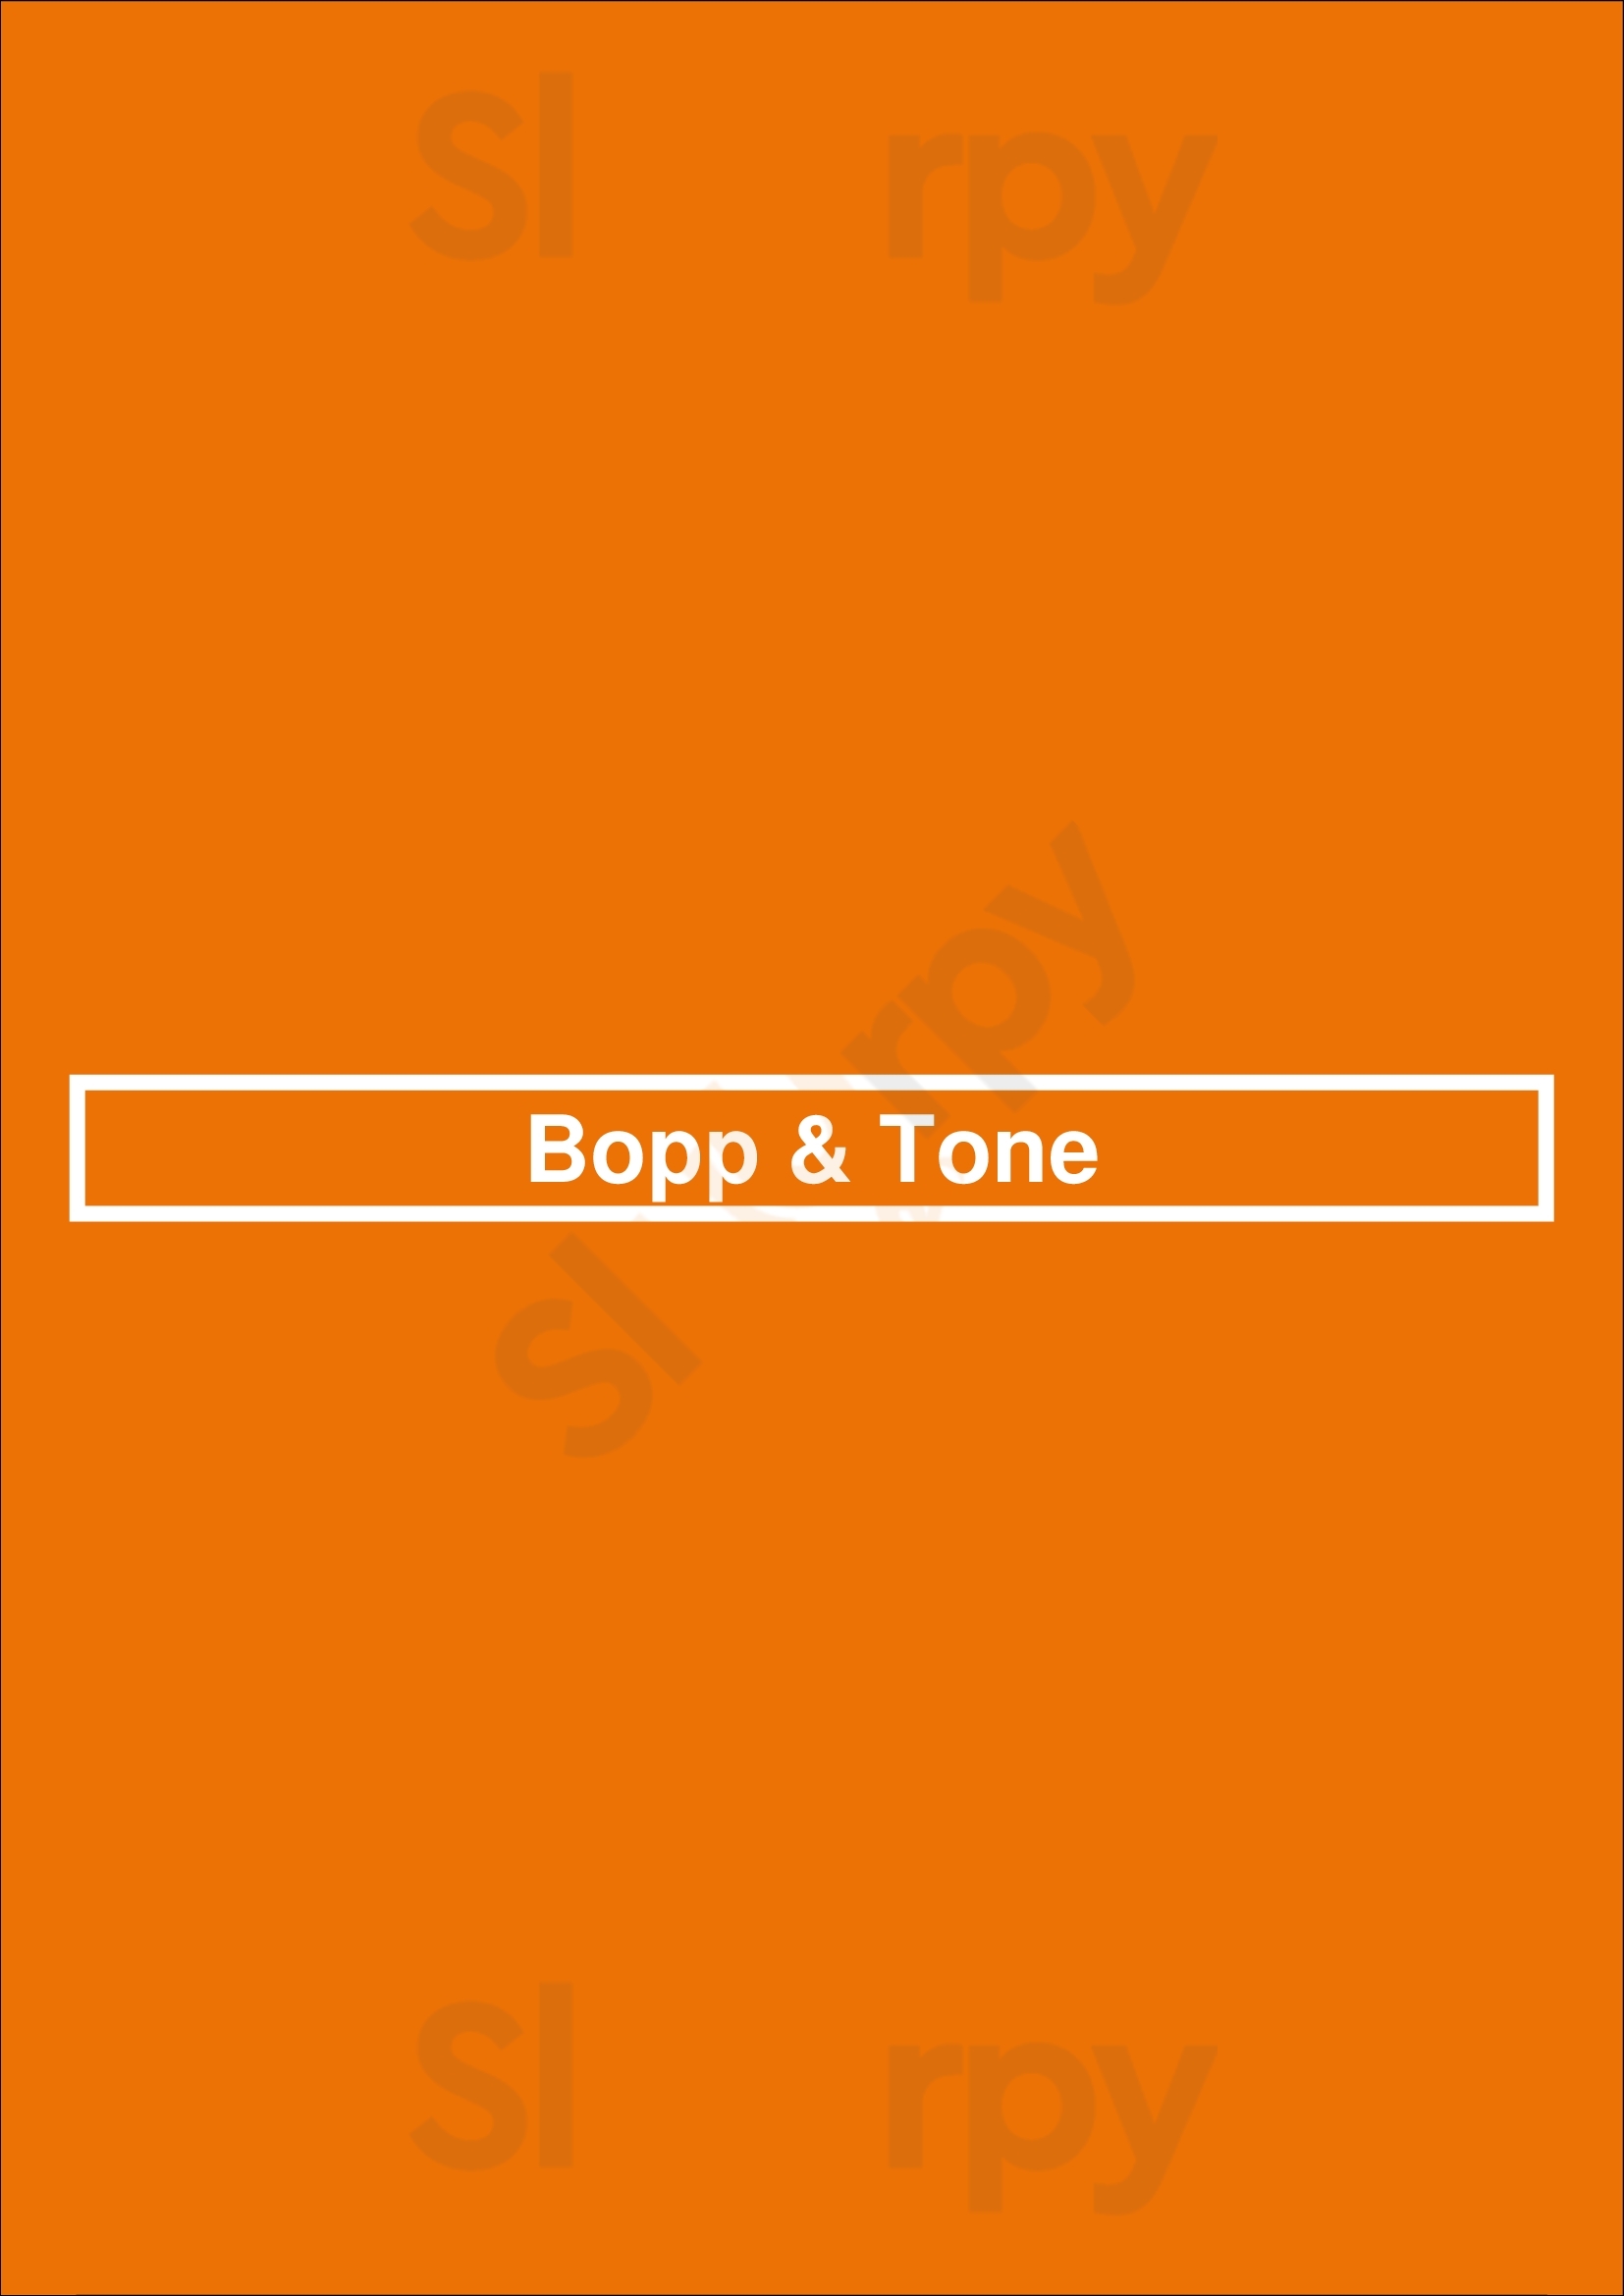 Bopp & Tone Sydney Menu - 1